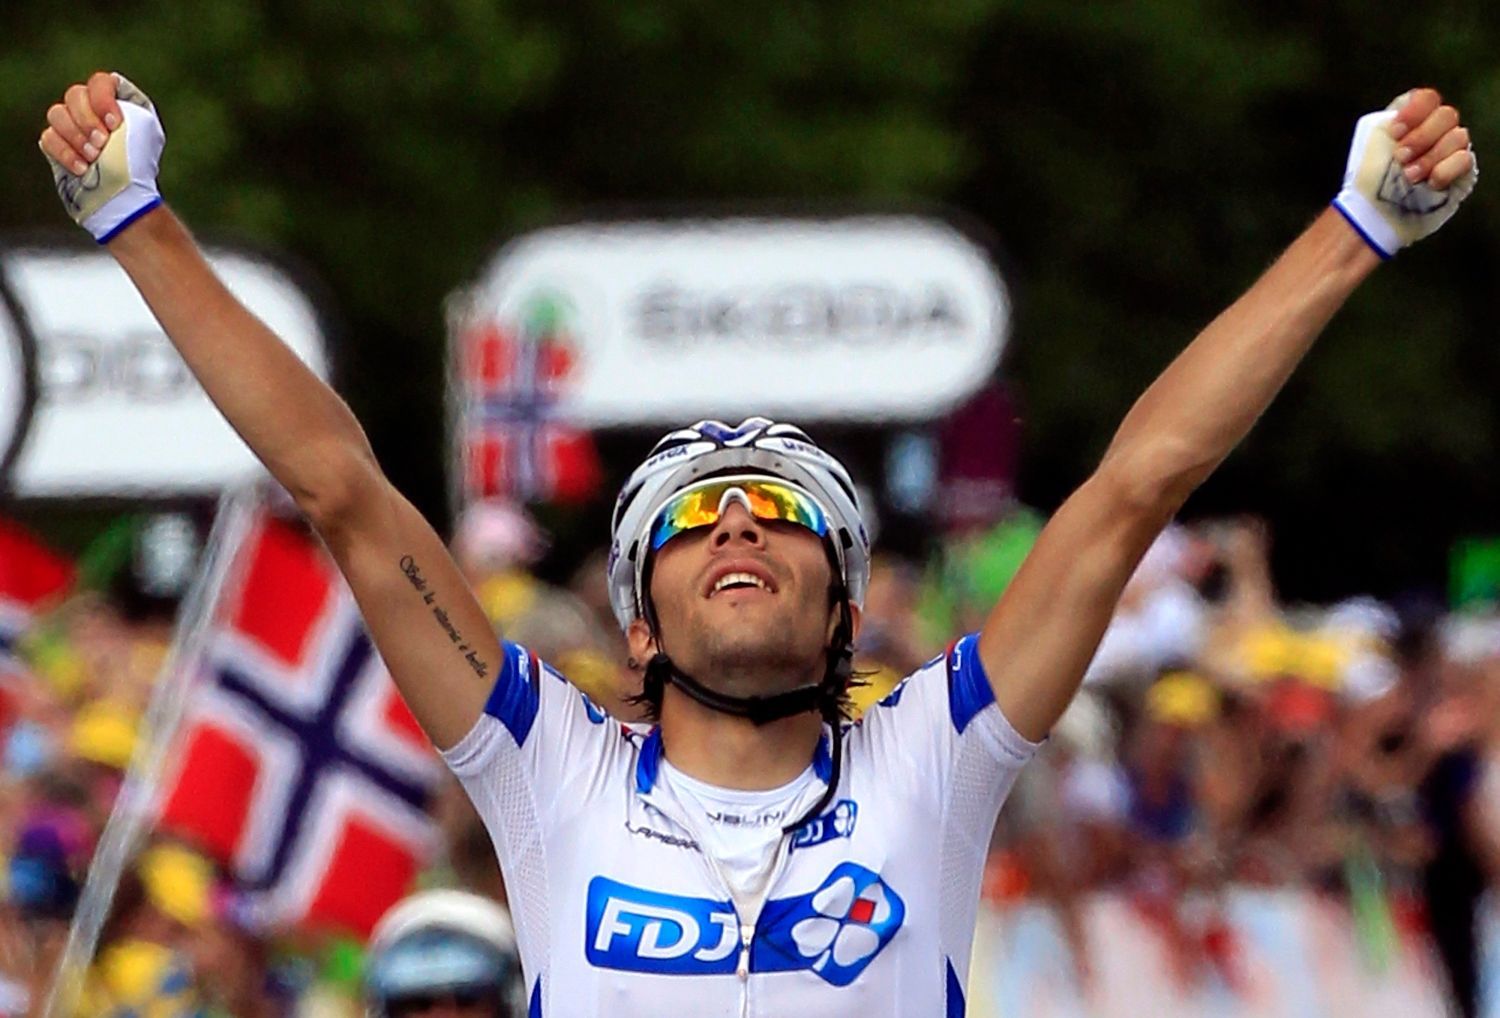 Francouzský cyklista Thibaut Pinot ze stáje FDJ-Bigmat se raduje z vítězství v osmé etapě Tour de France 2012.